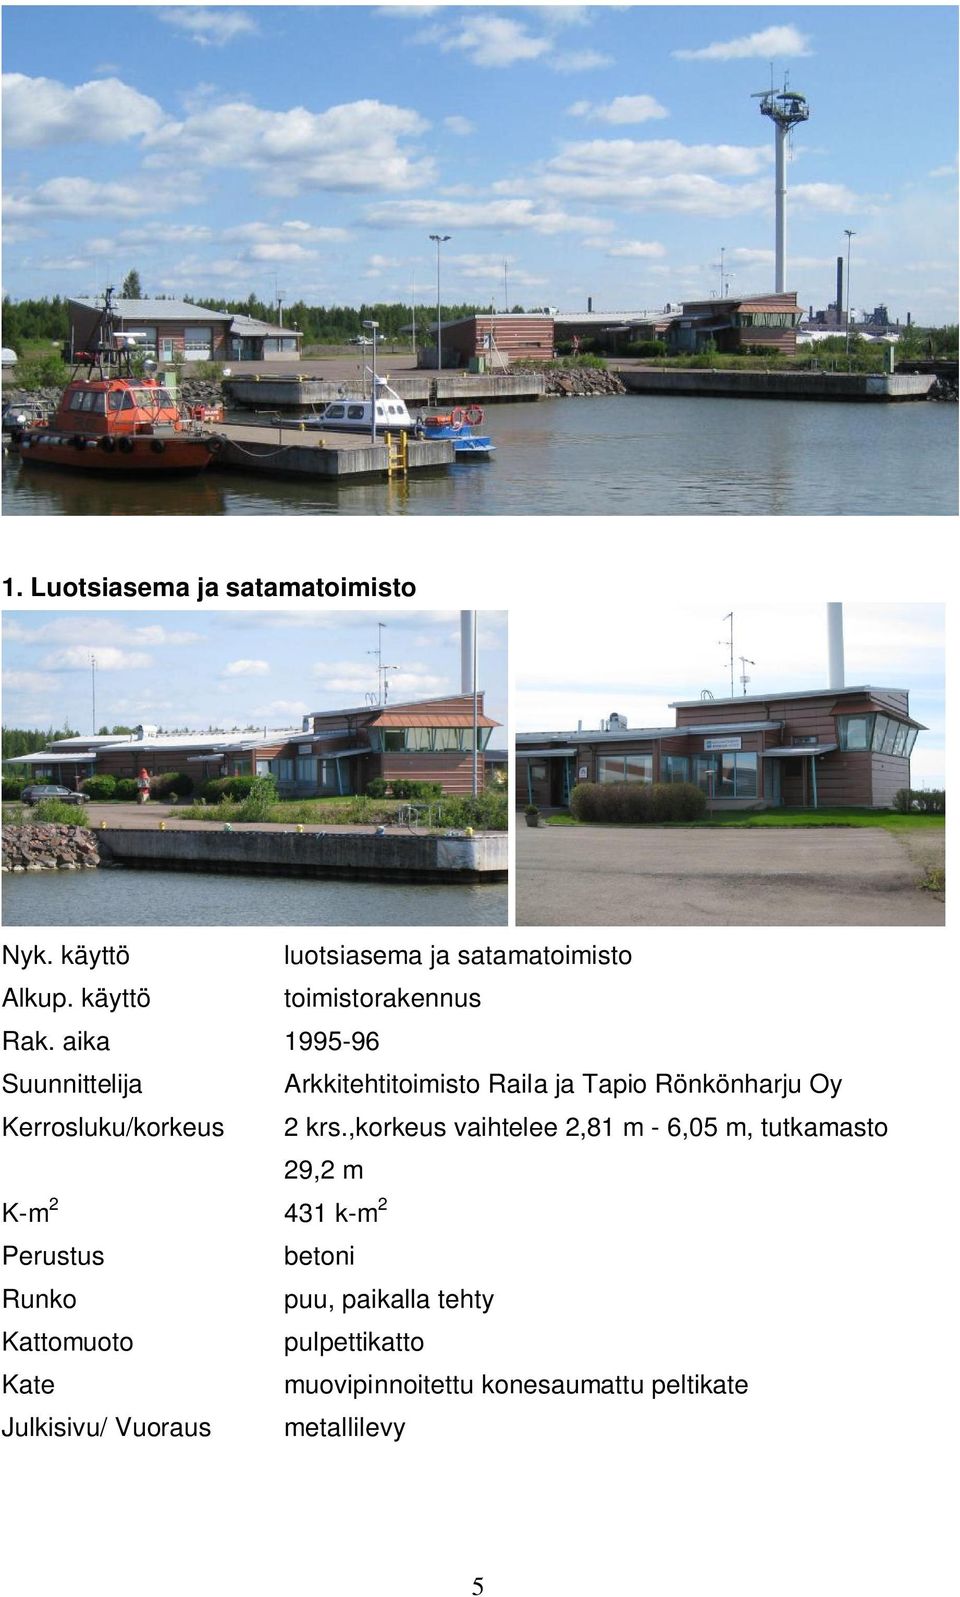 aika 1995-96 Suunnittelija Arkkitehtitoimisto Raila ja Tapio Rönkönharju Oy Kerrosluku/korkeus 2 krs.